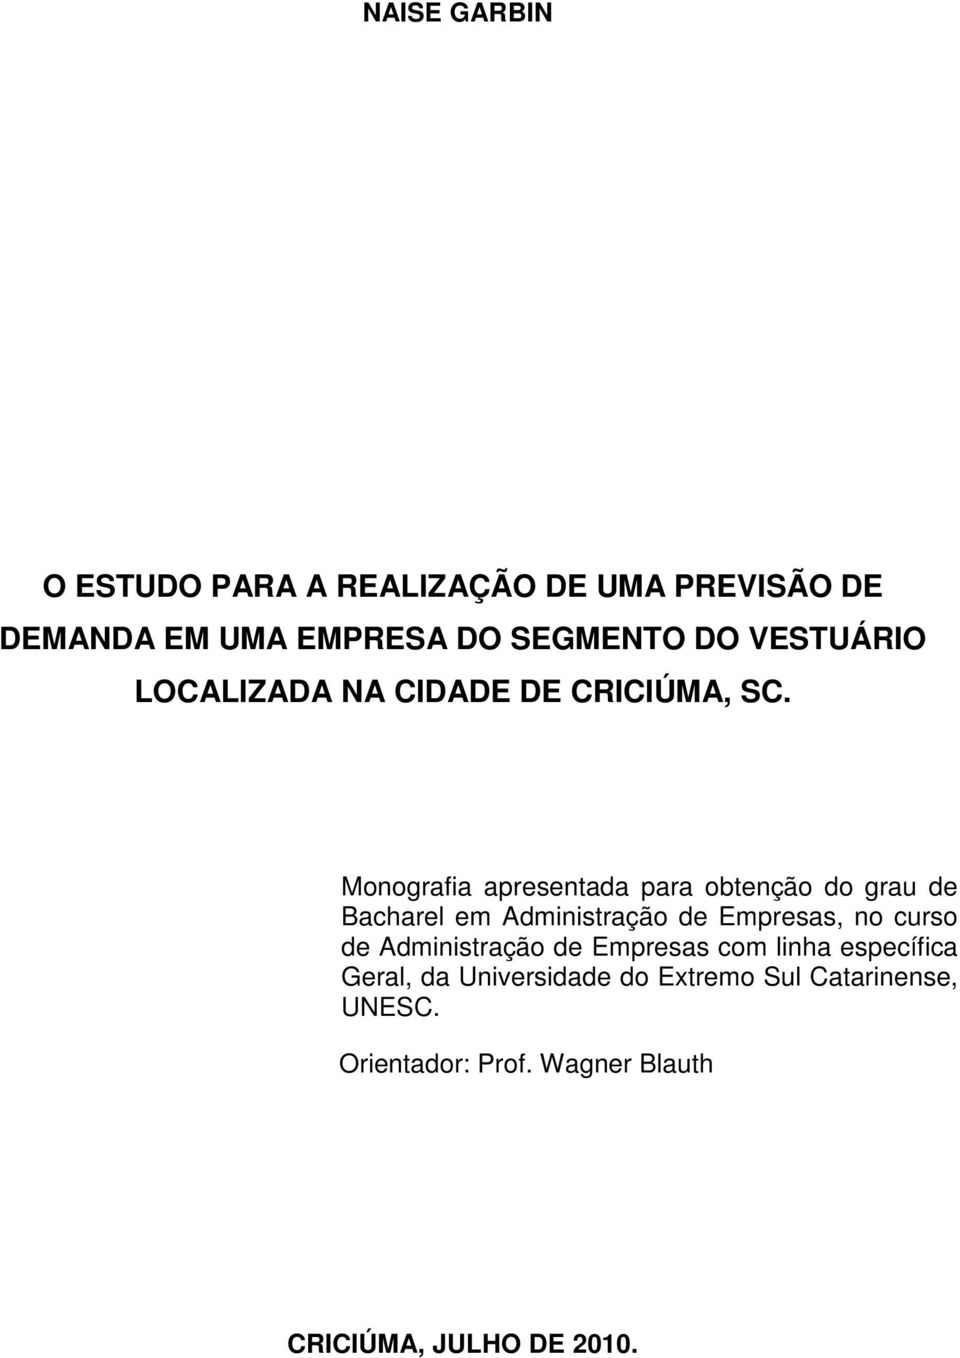 Monografia apresentada para obtenção do grau de Bacharel em Administração de Empresas, no curso de